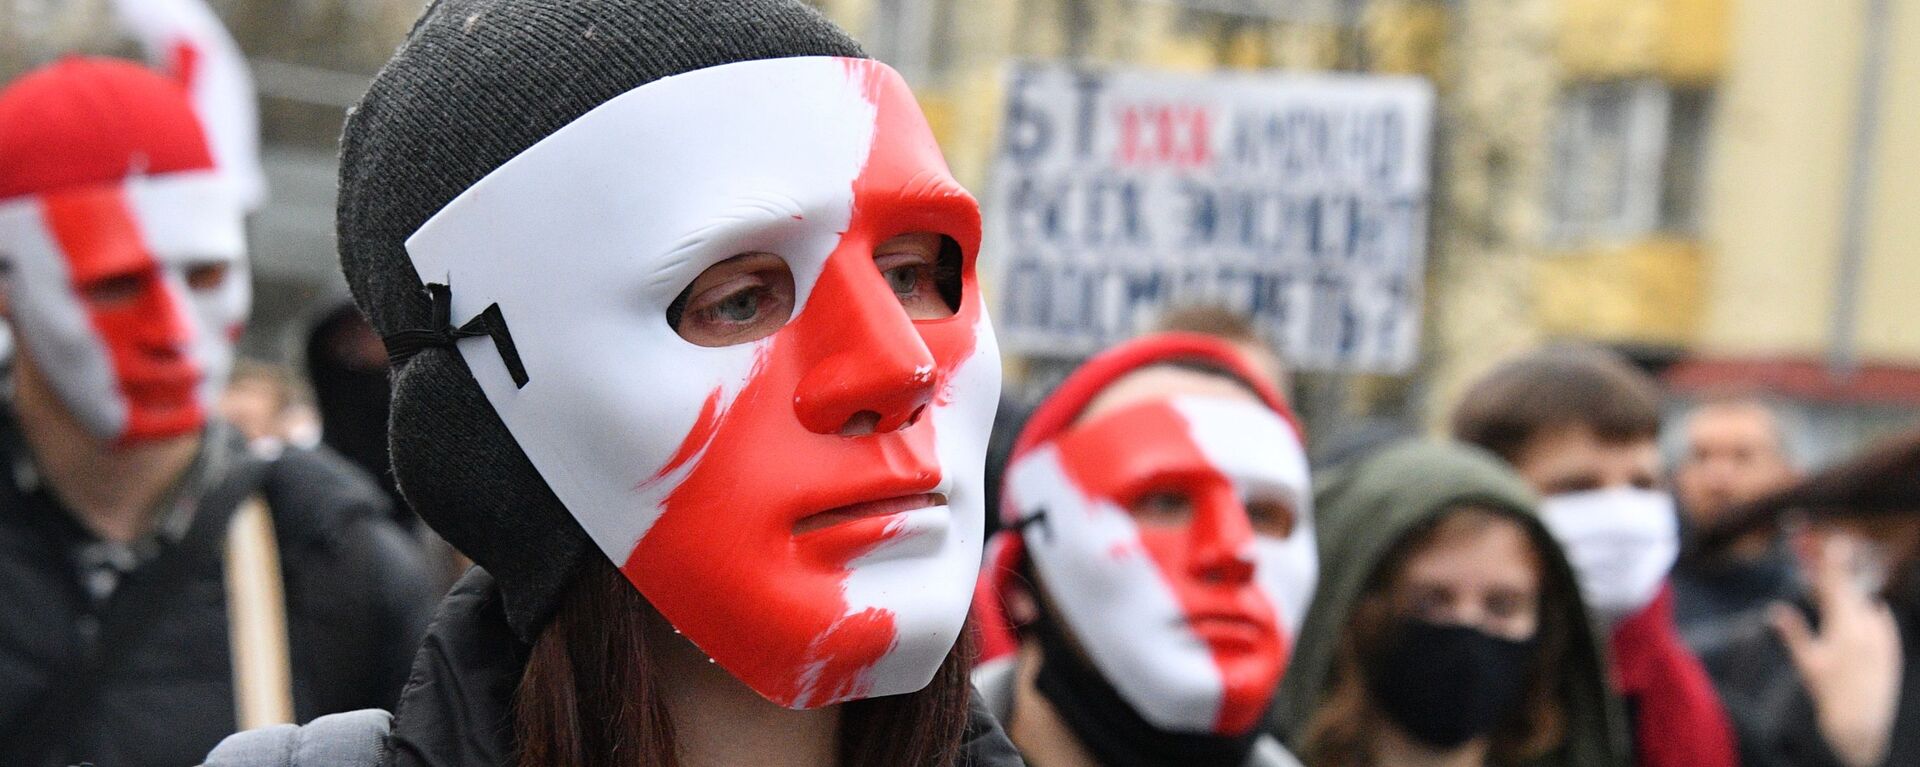 Участники акции протеста оппозиции Народный ультиматум в Минске - Sputnik Латвия, 1920, 20.01.2021